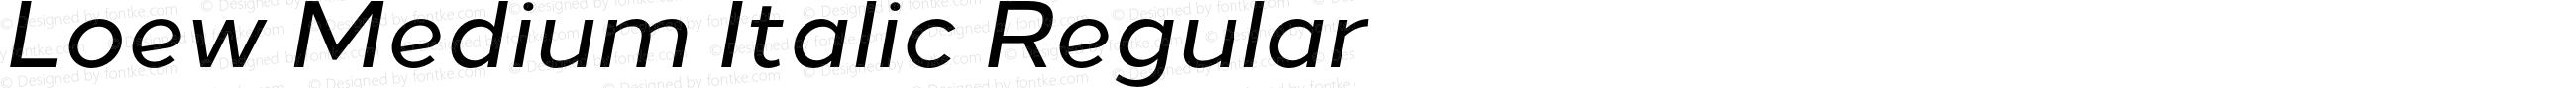 Loew Medium Italic Regular